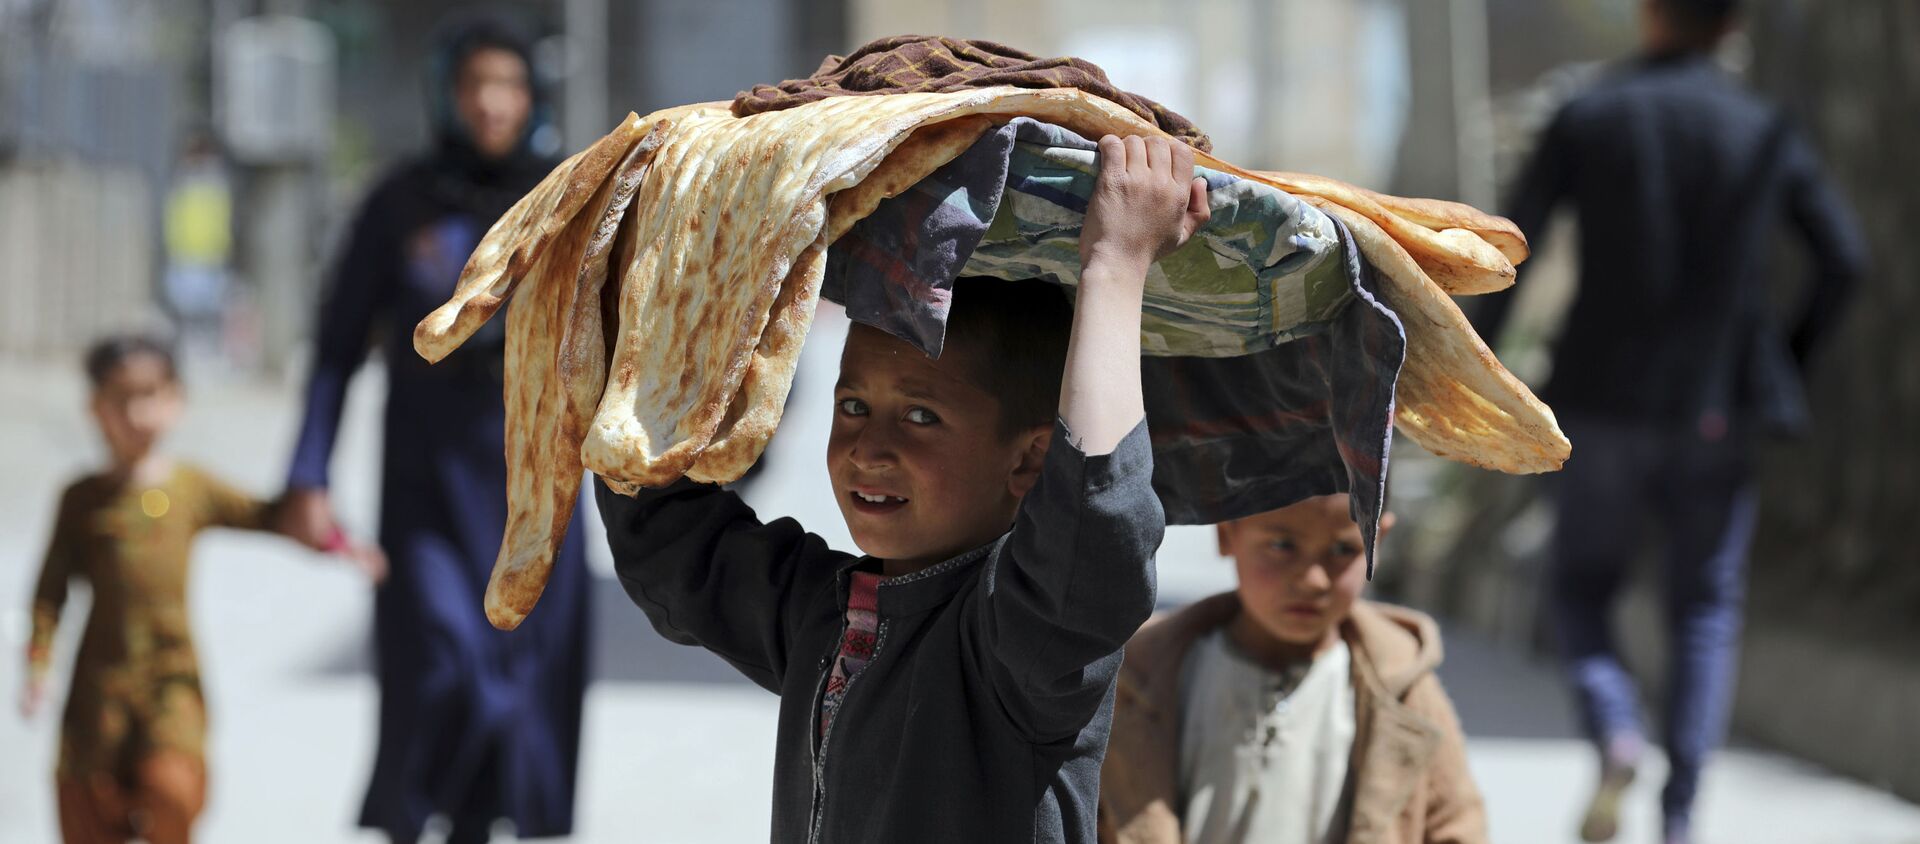 Мальчик с хлебом на голове на одной из улиц Кабула, Афганистан - Sputnik Грузия, 1920, 08.07.2021